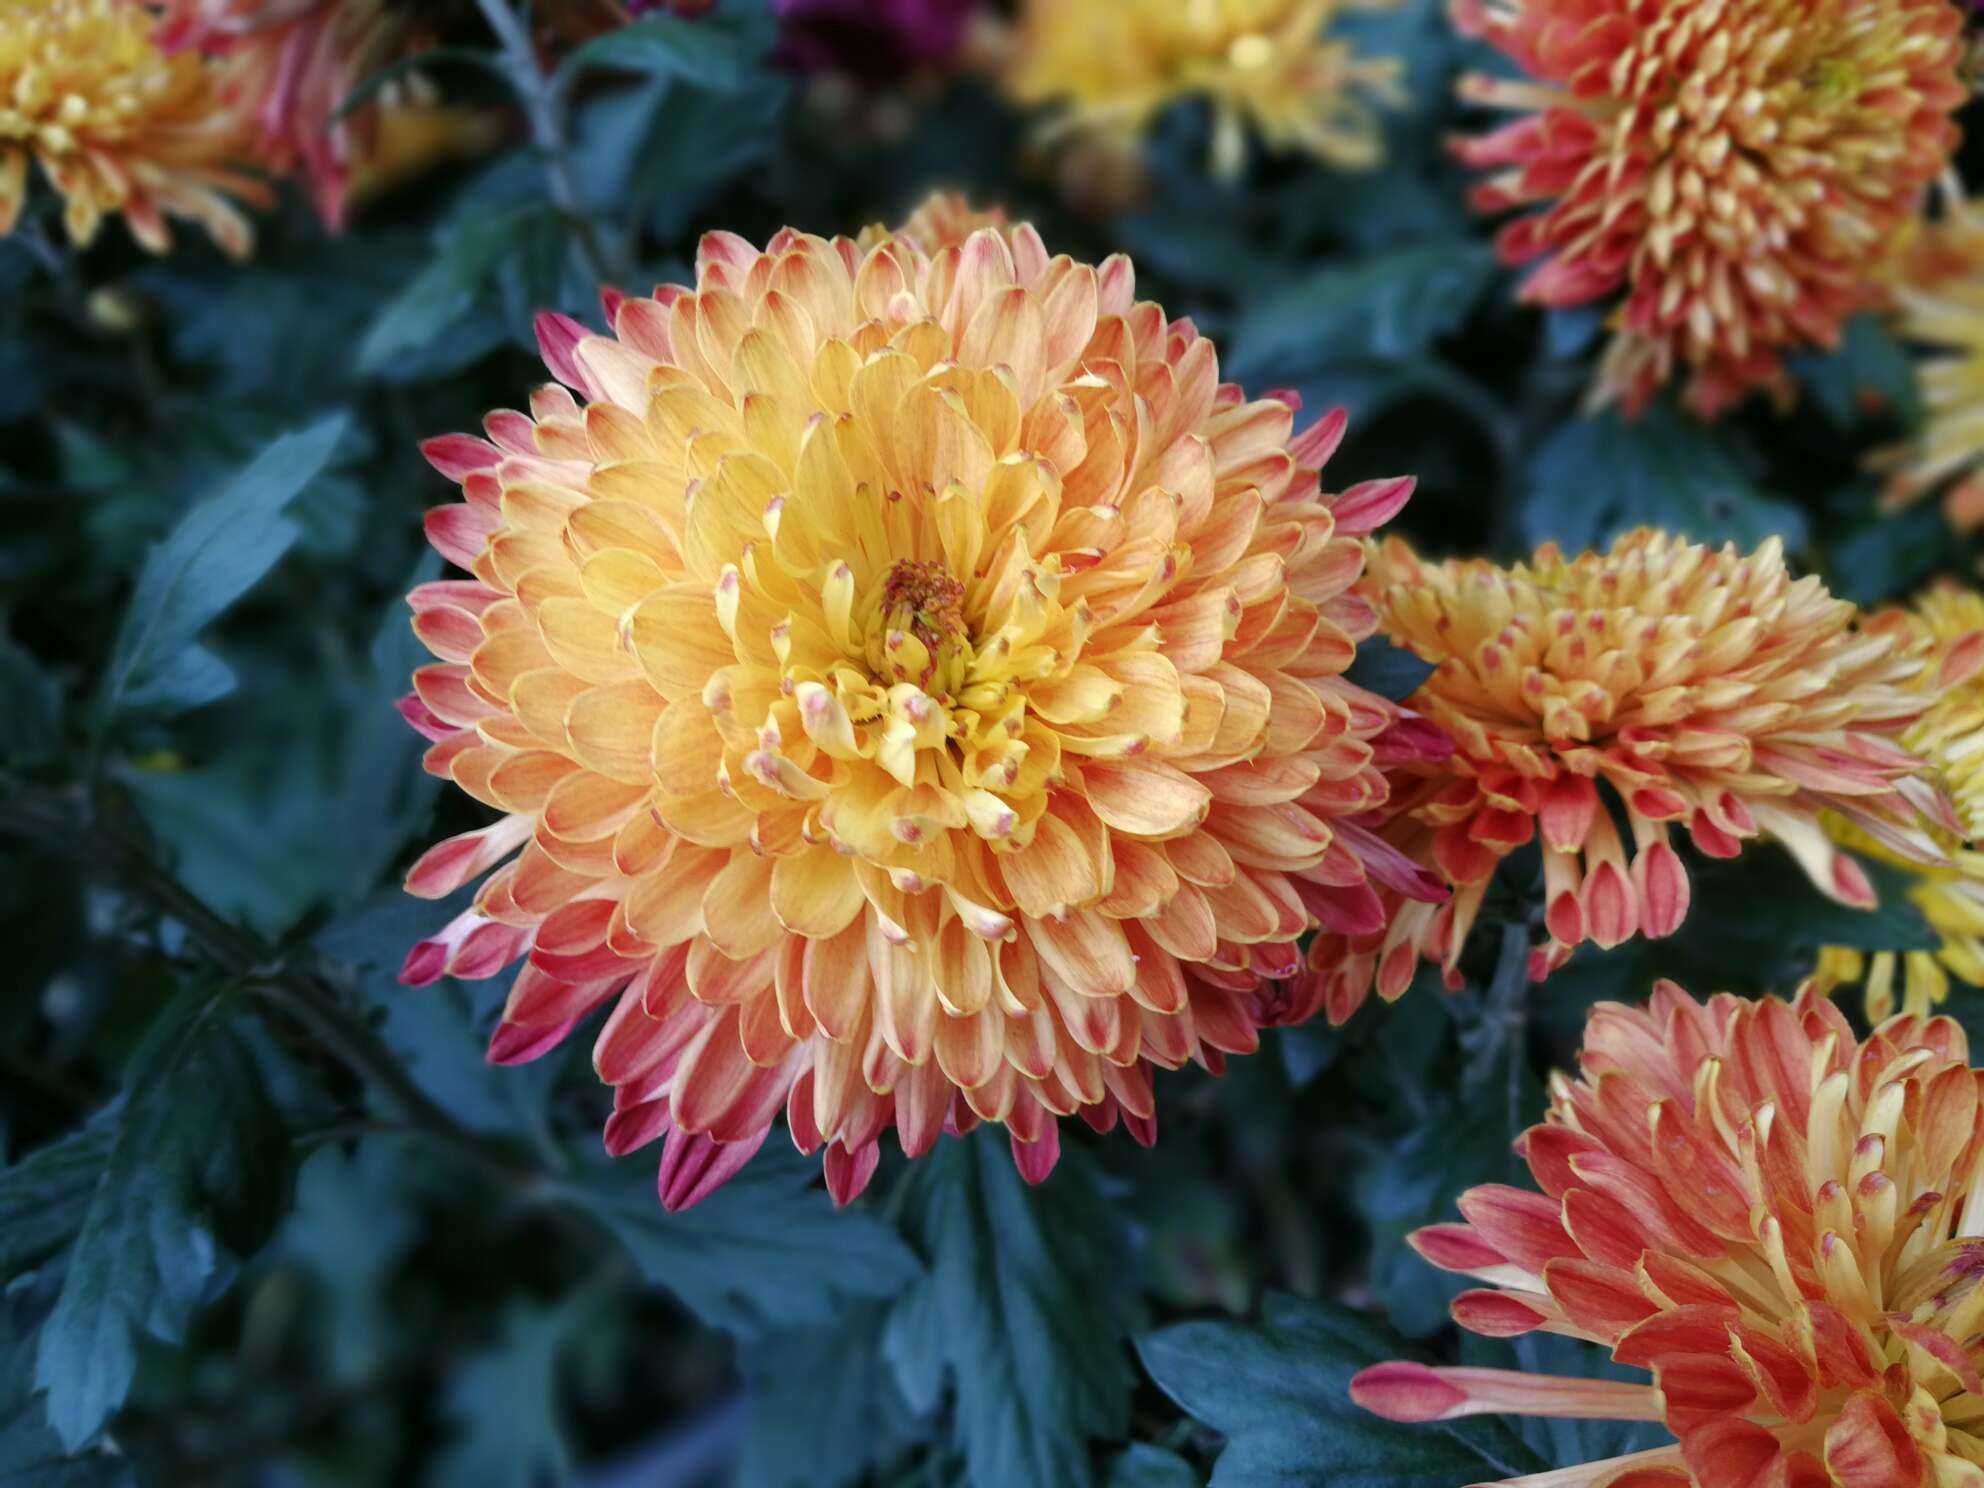 手机摄影# 菊花展,惊艳于这么多美丽的菊花,各种颜色各种各样的菊花